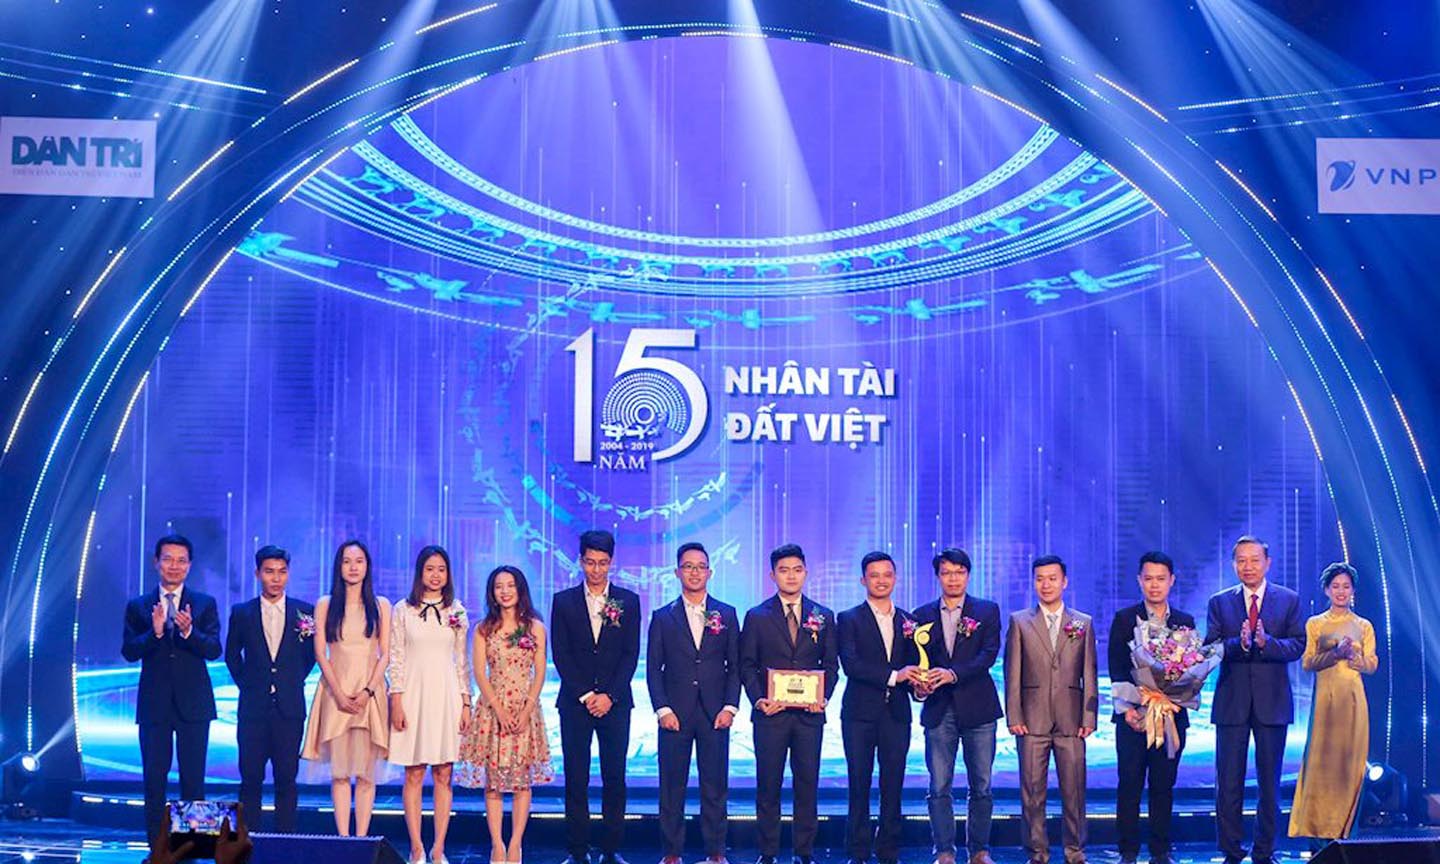 Bộ trưởng Bộ TT&TT Nguyễn Mạnh Hùng và Bộ trưởng Bộ Công an Tô Lâm trao giải Nhất cho nhóm tác giả sản phẩm “Phần mềm tự động chuyển đổi tiếng nói tiếng Việt sang văn bản (Origin-STT)”.